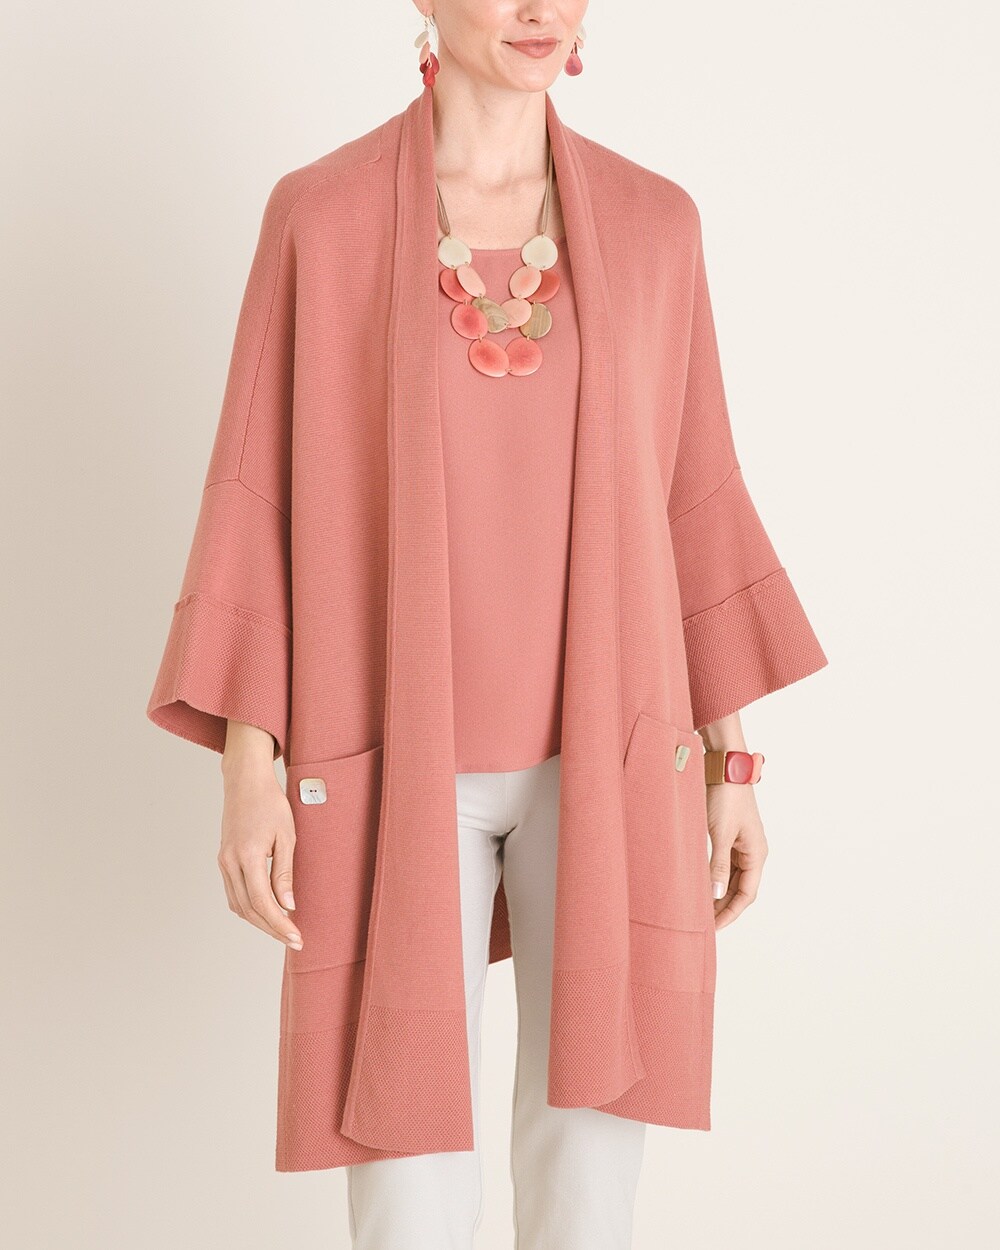 Marla Wynne for Chico's Kimono Sweater